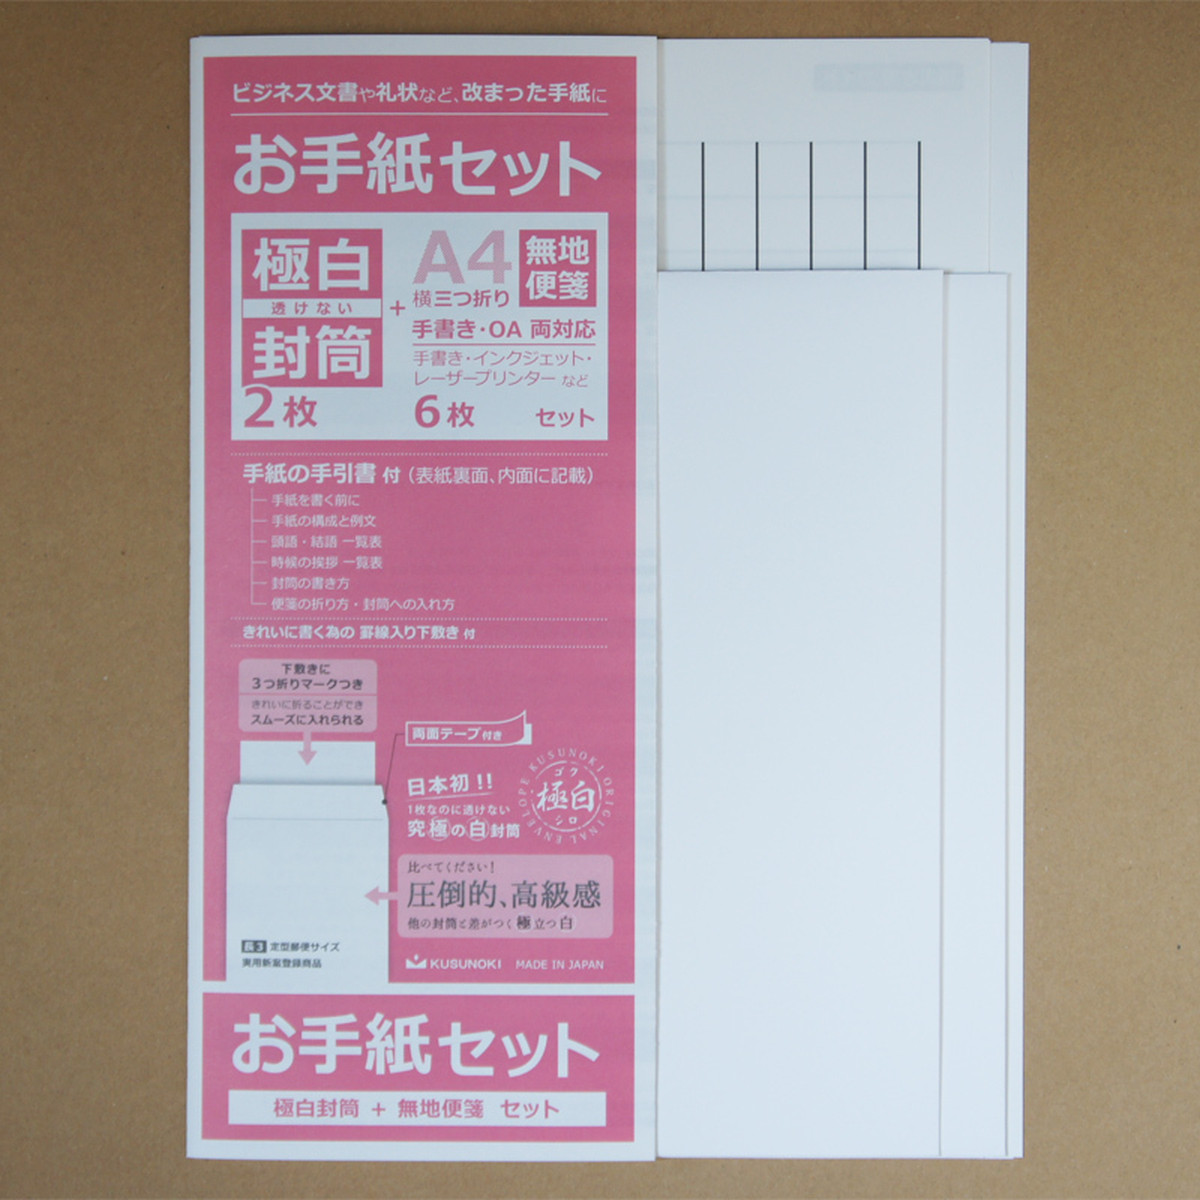 極白封筒 お手紙セット 無地便箋と極白封筒 Gbn3bl M 2 Kusunoki